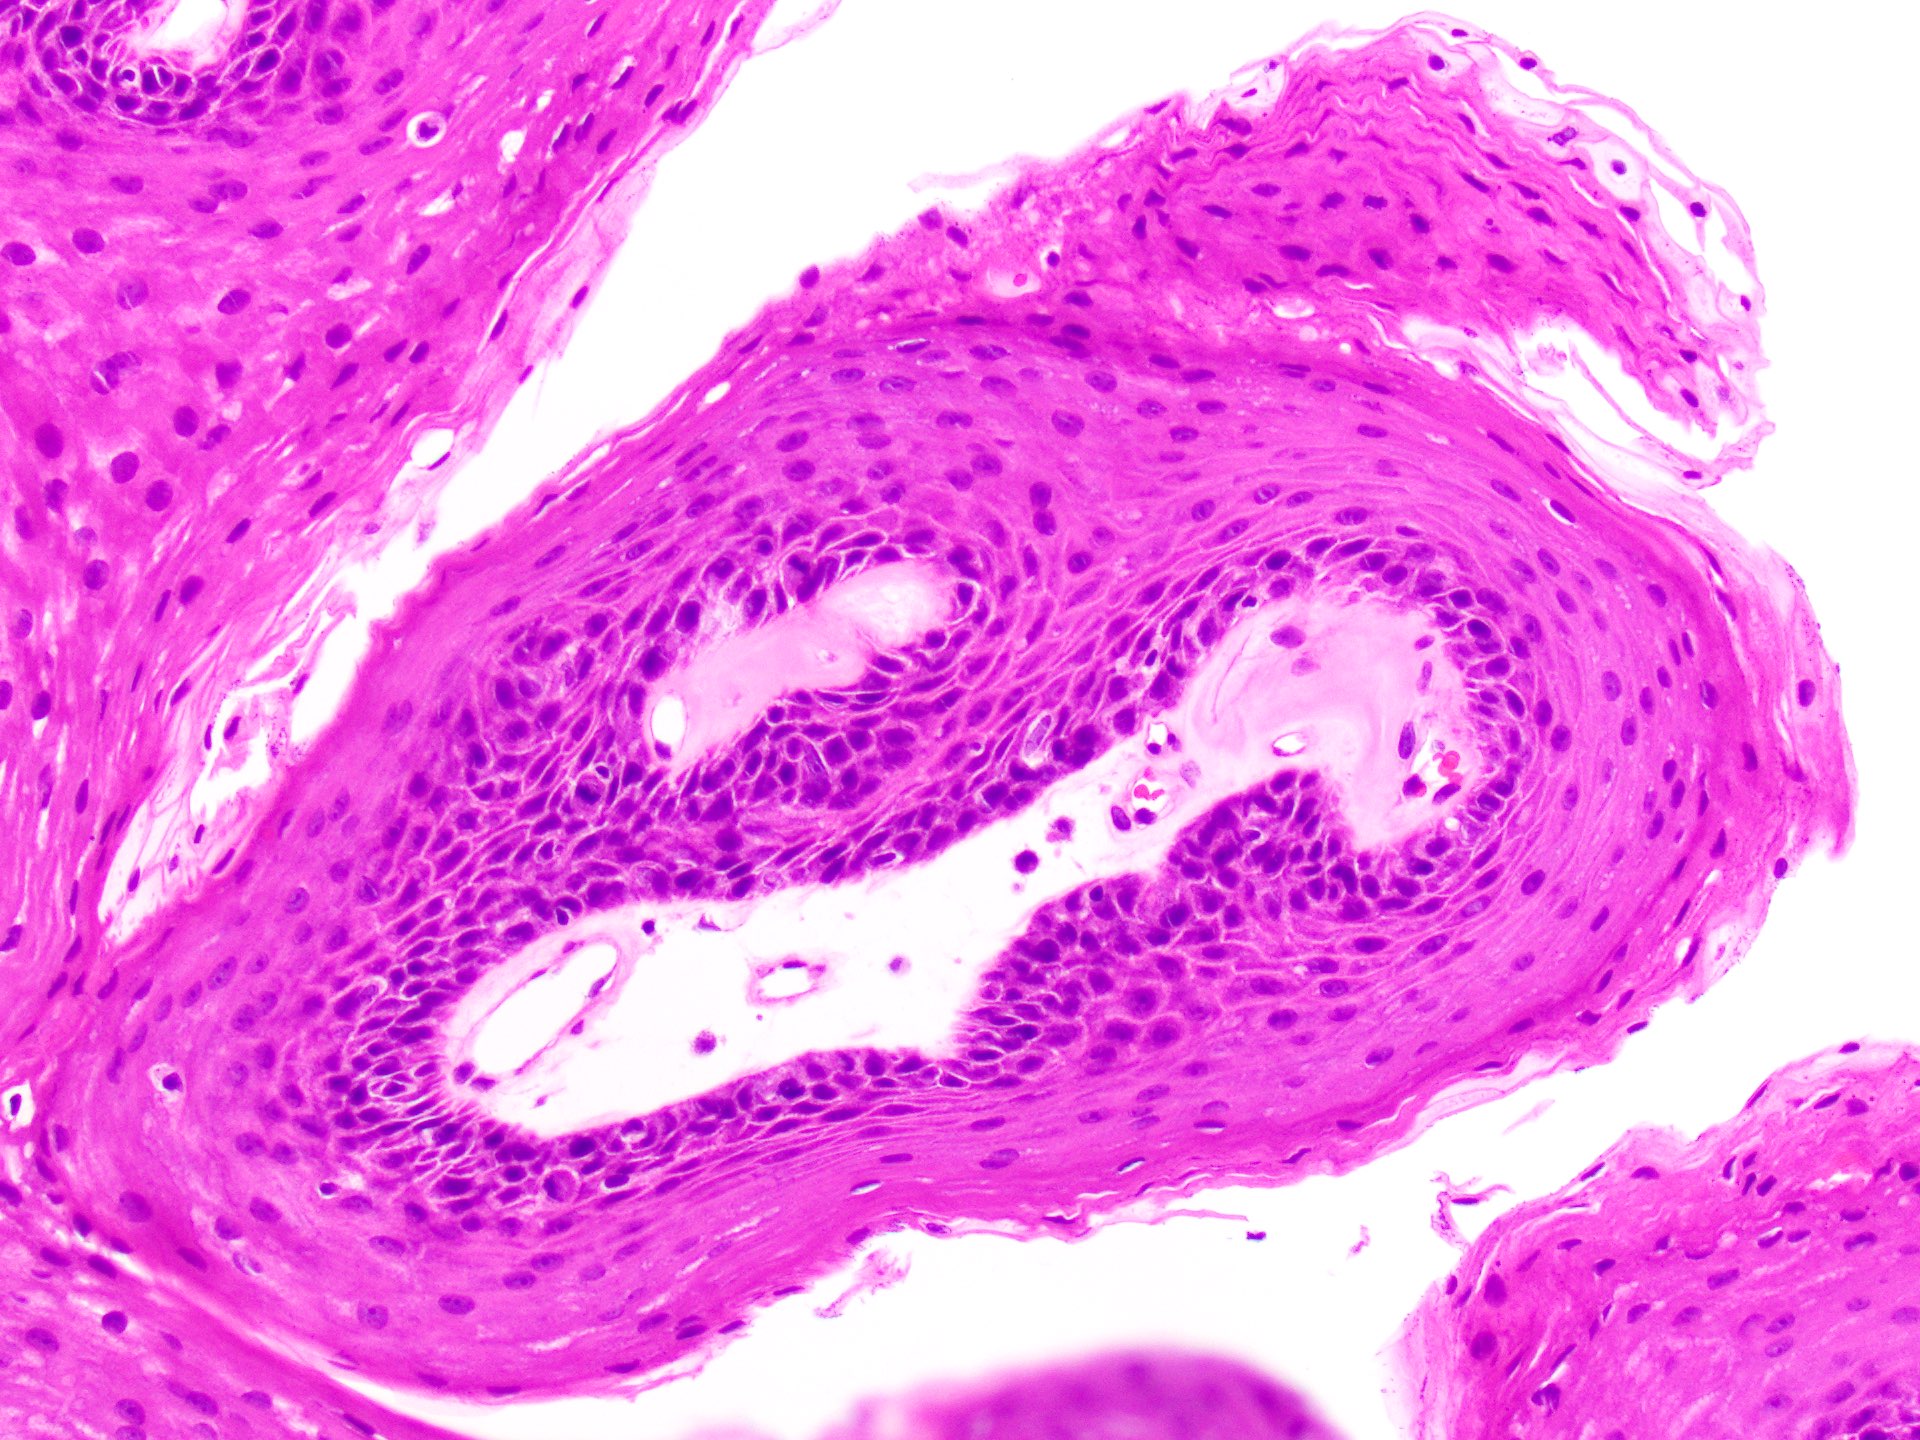 papilloma pathology outlines skin